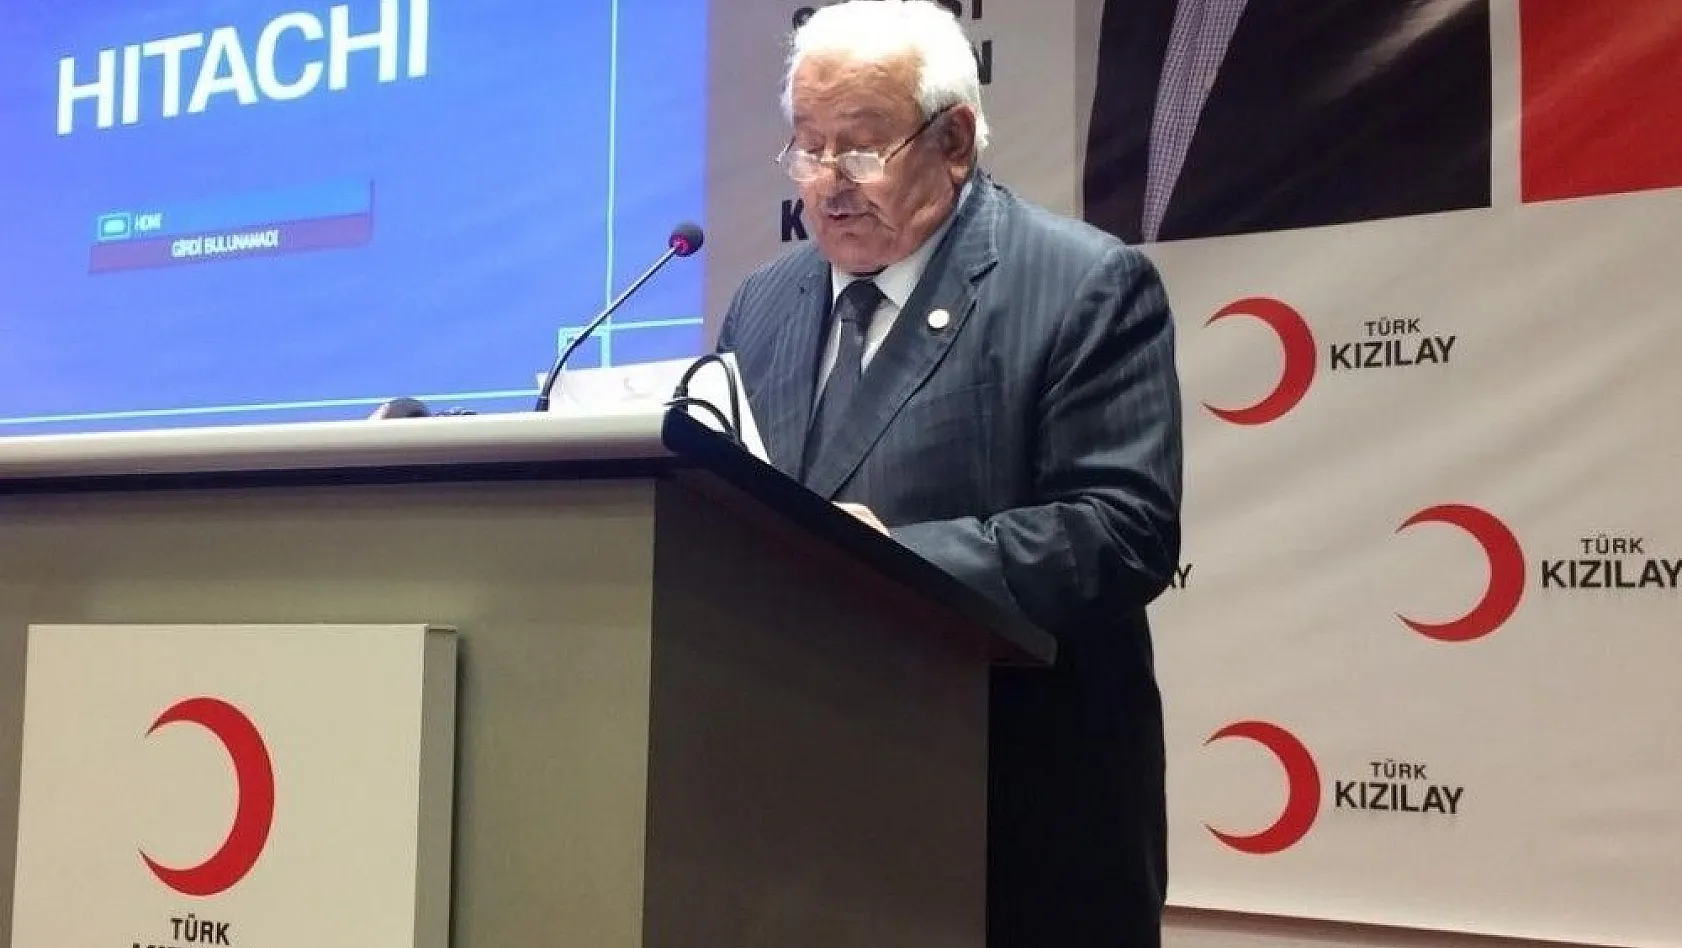 Kızılay Genel Başkanı Kınık: '191 Ülke arasında en hayırsever ülke Türkiye'
